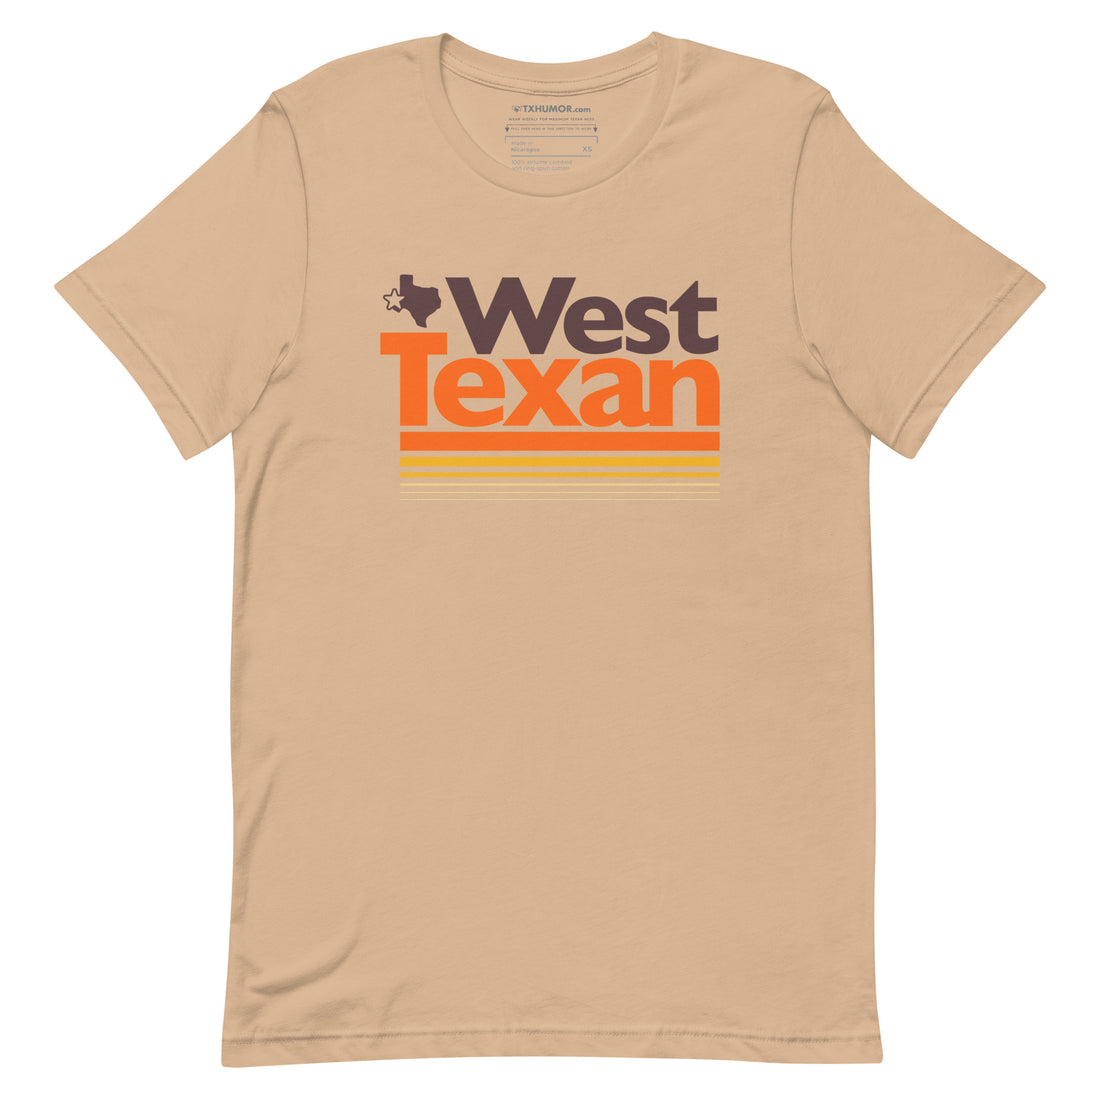 West Texan T-shirt